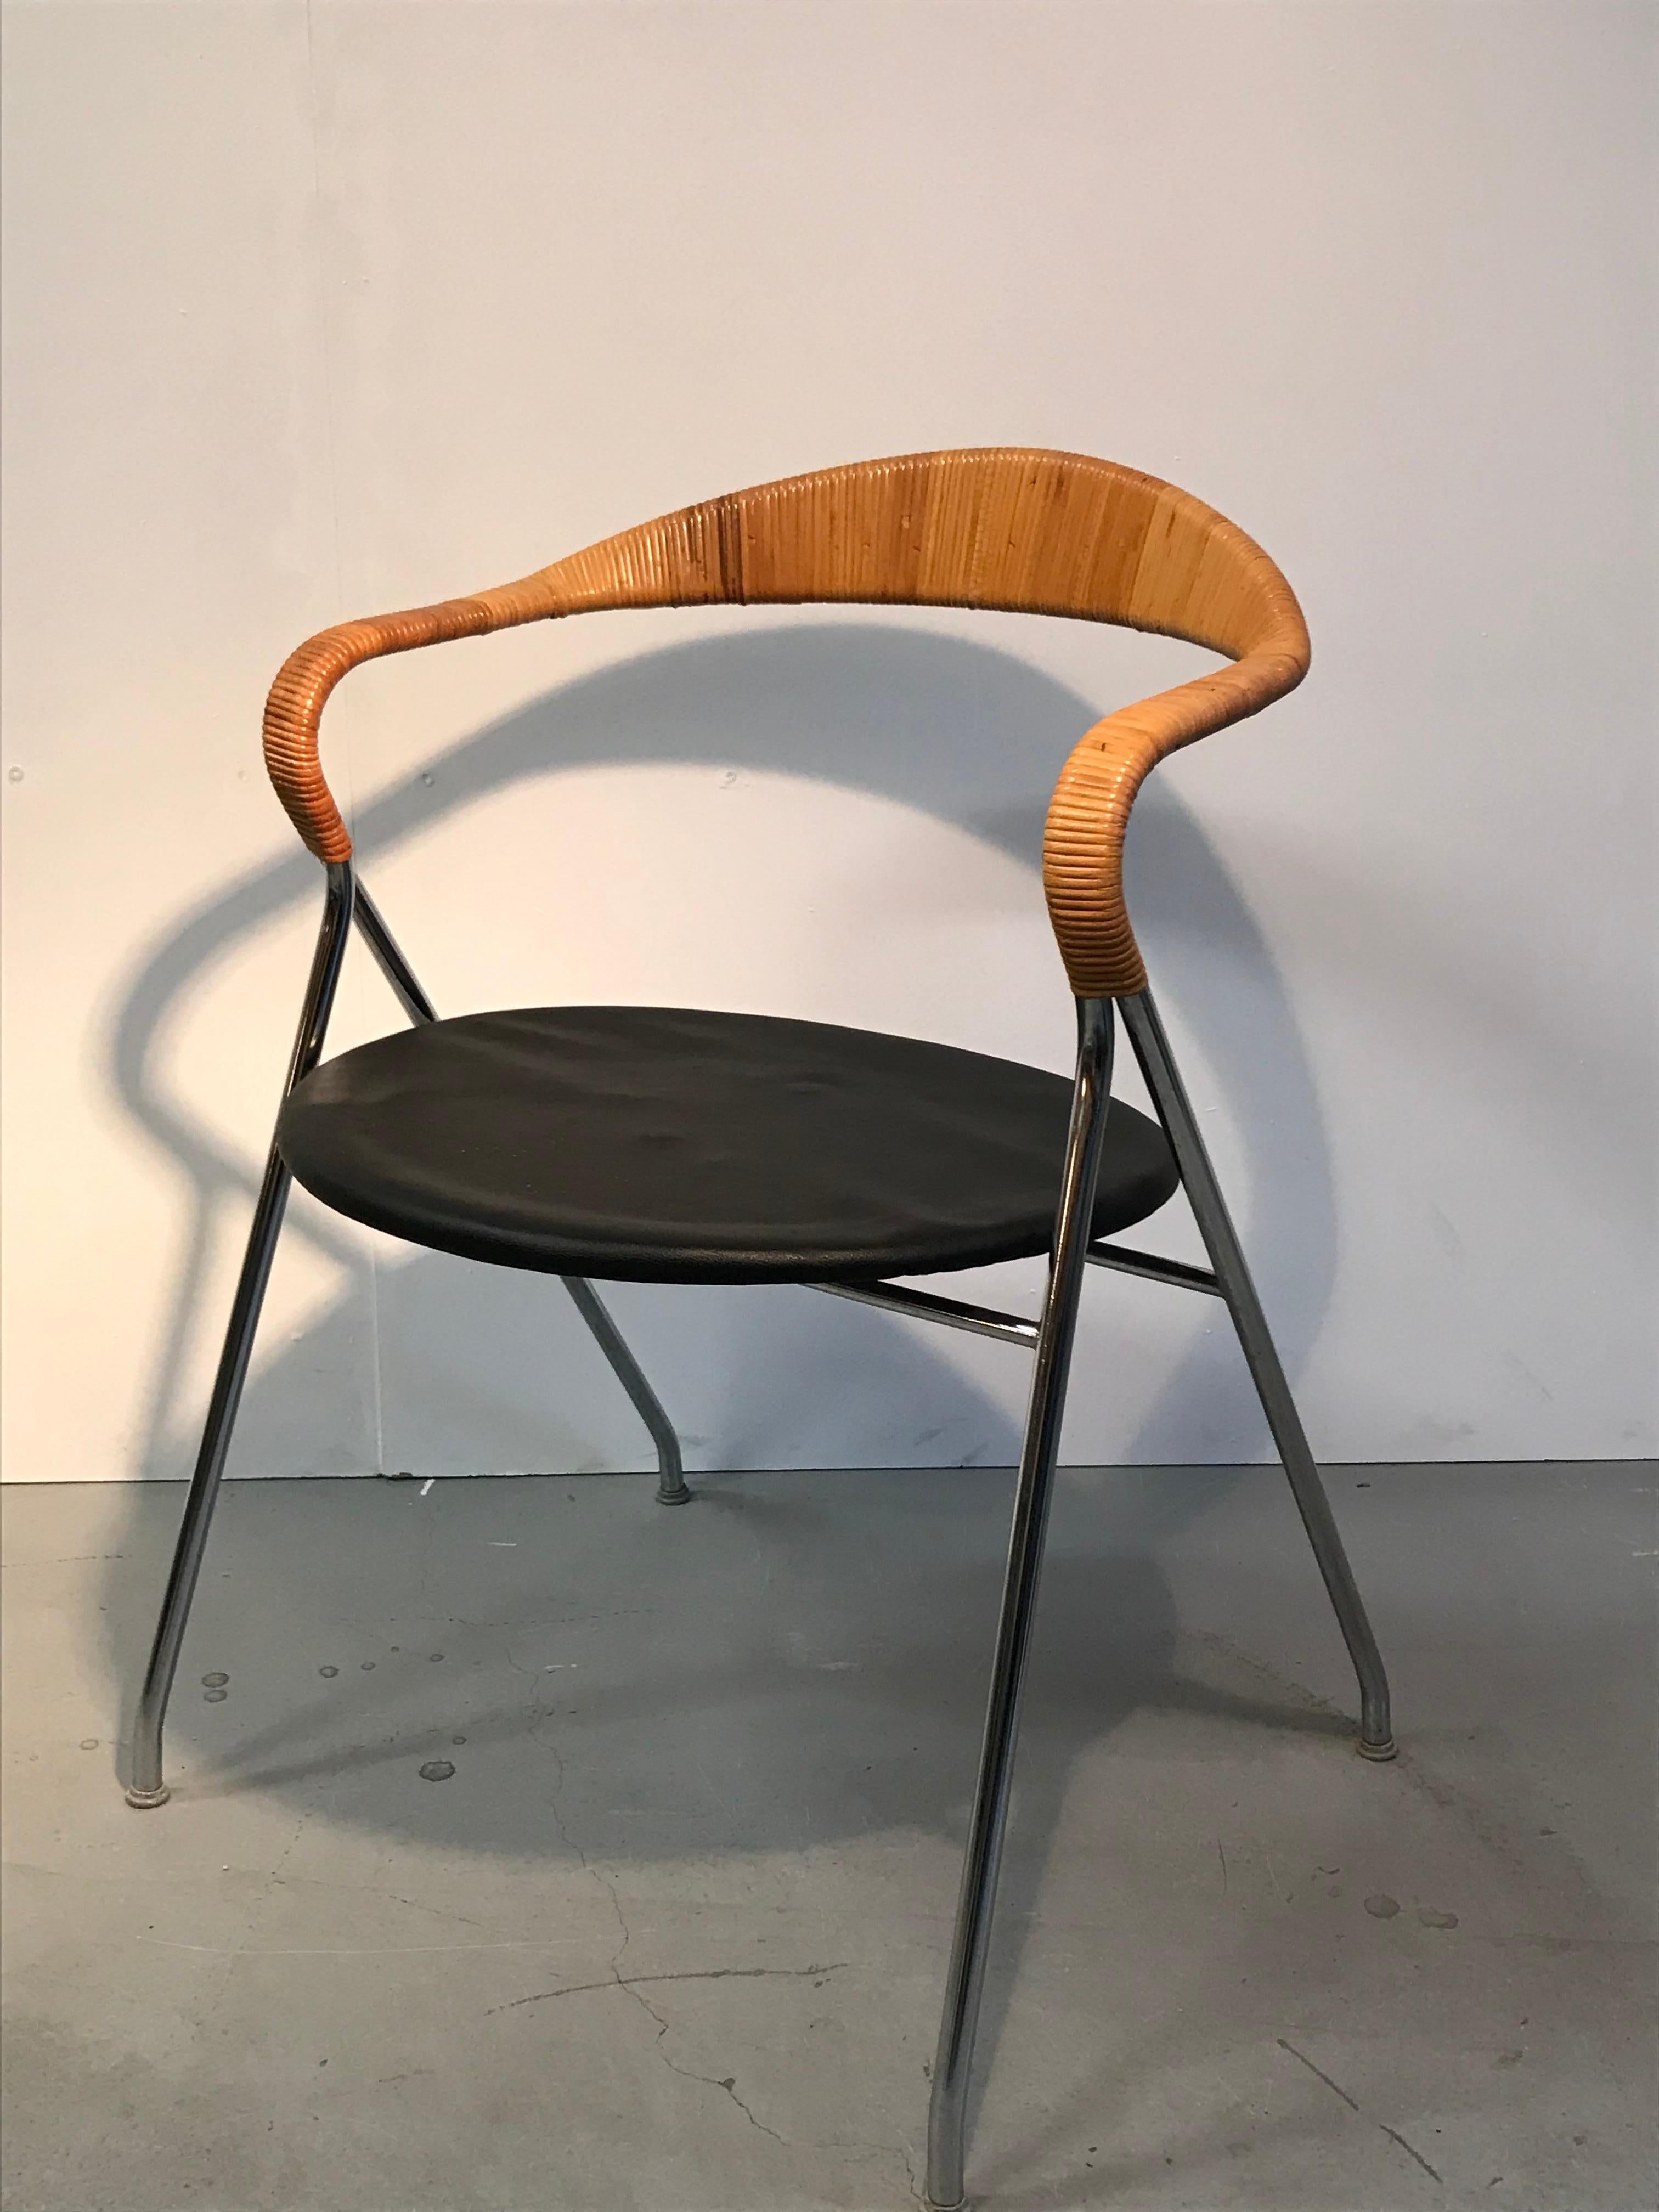 4 Stühle verfügbar von Hans Eichenberger, Schweiz geboren 1926. 
Die Stühle, Saffa HE 103, wurden 1955 für Dietiker in der Schweiz hergestellt. 

Die Beine aus verchromtem Stahlrohr mit Sitzfläche aus Leder und Rückenlehne aus Rattan sind zwar